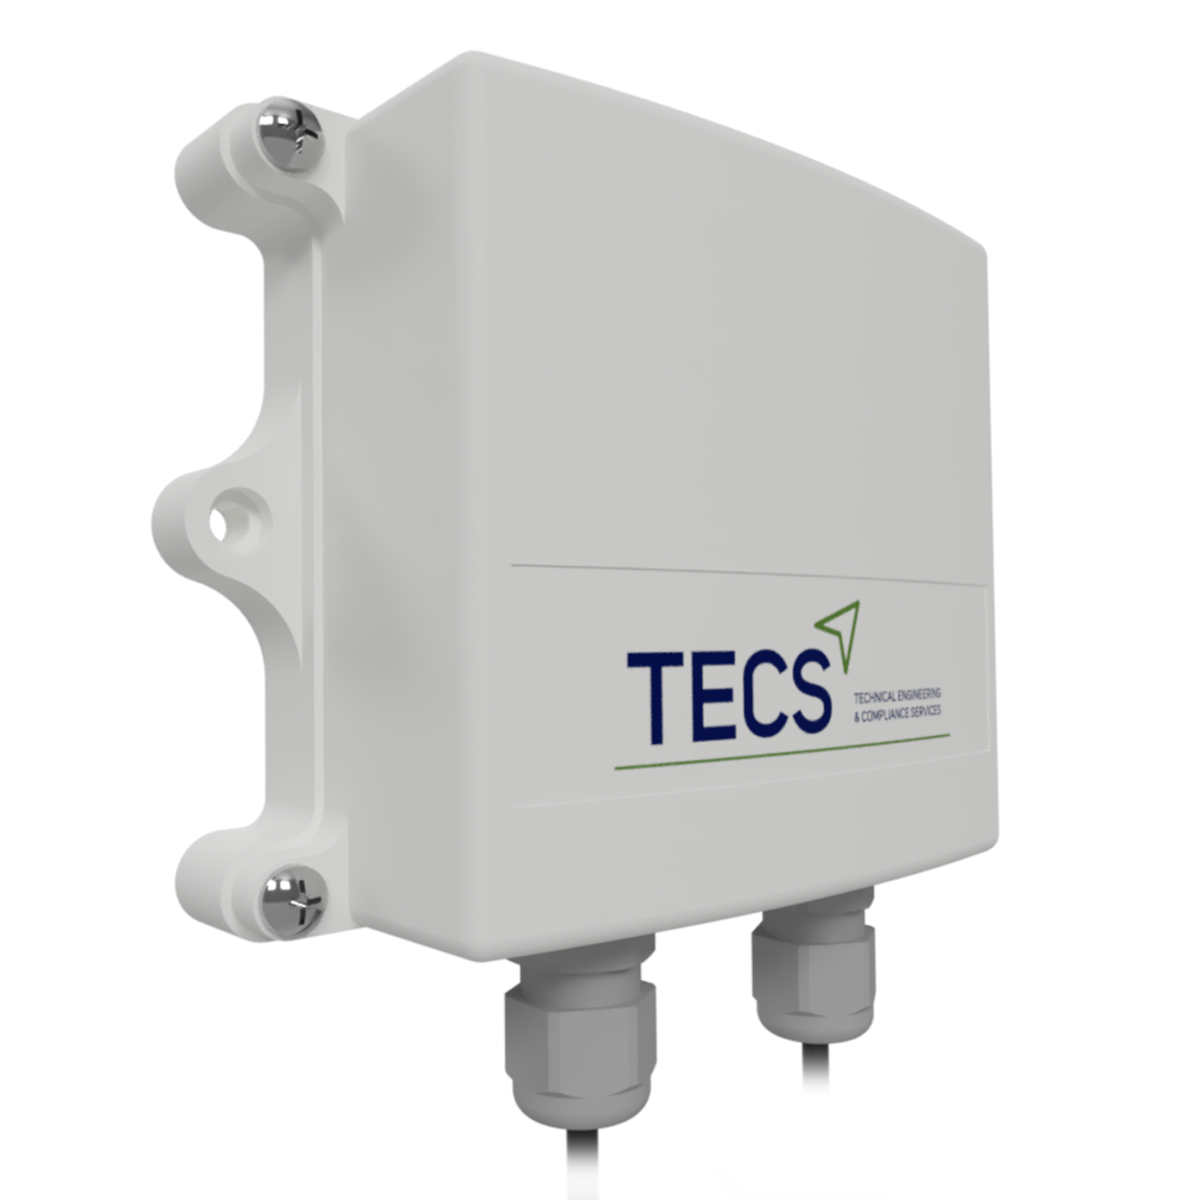 Tecs - Comprehensive building compliance services - Our Technology